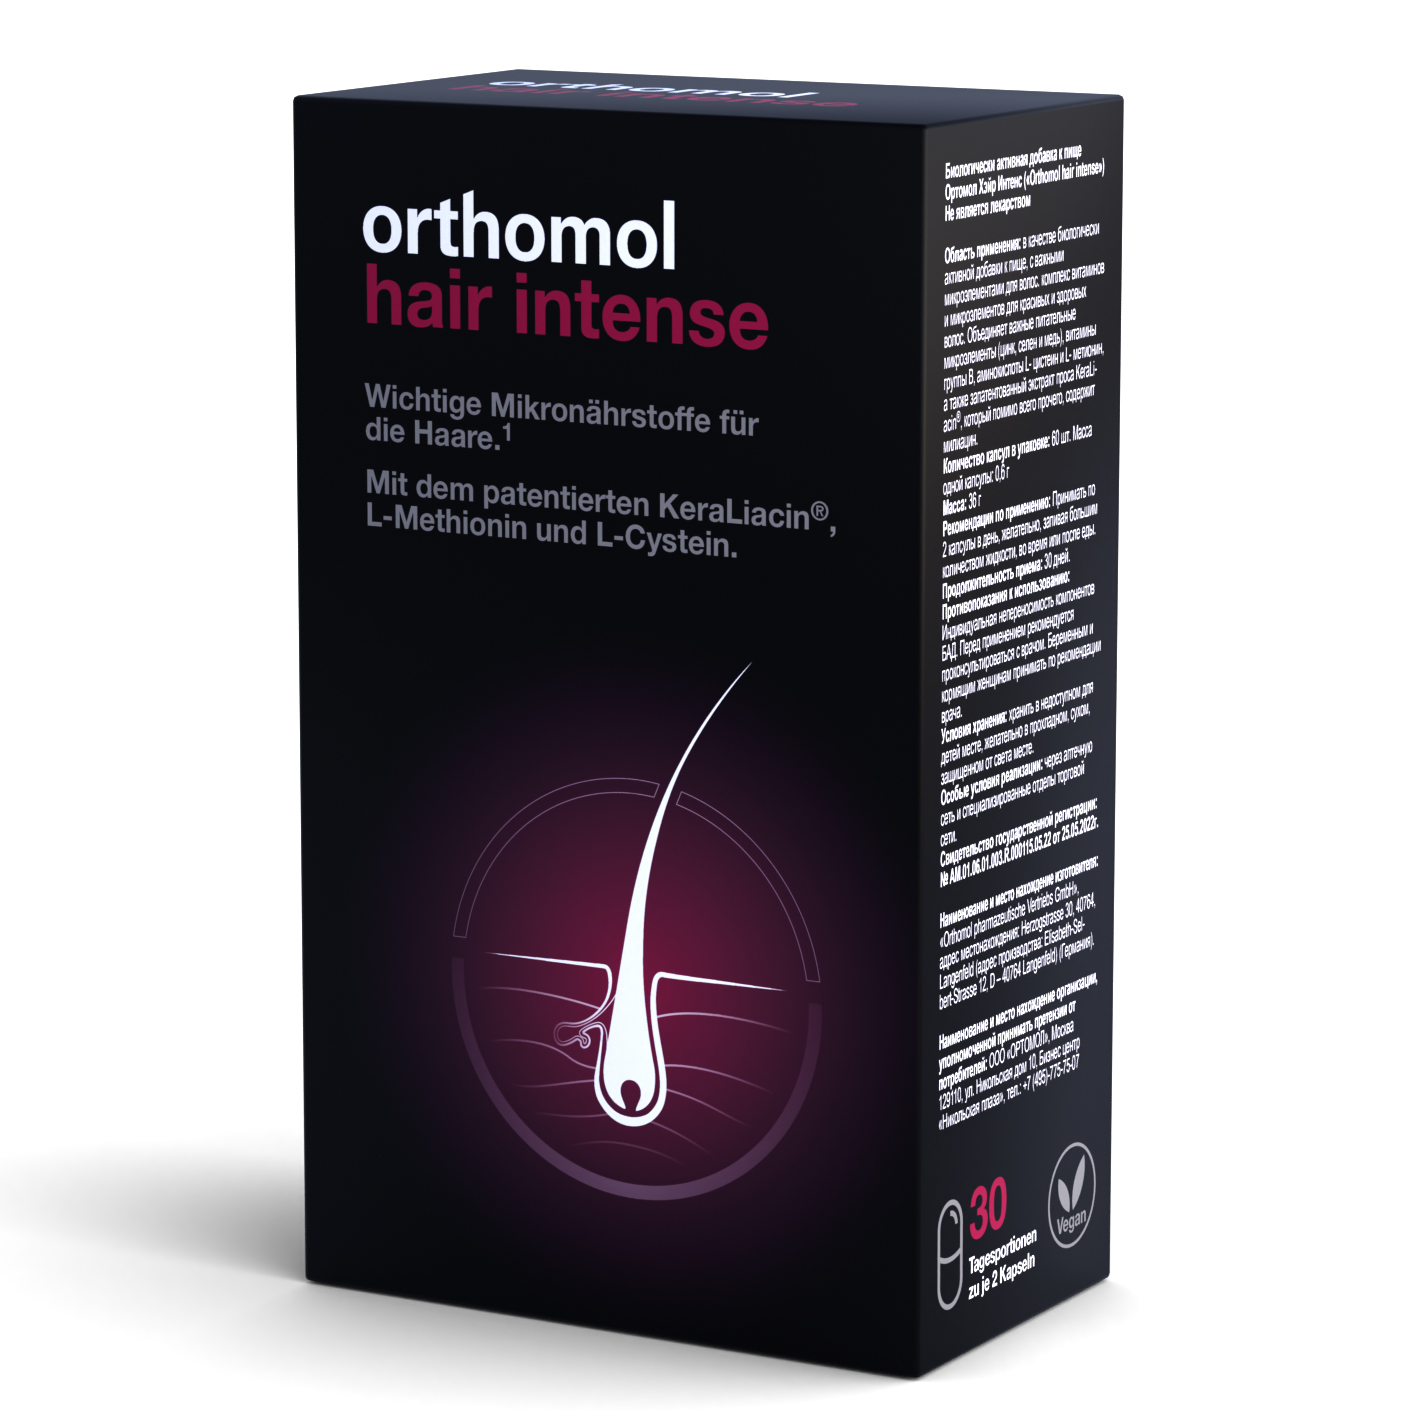 Orthomol Hair intense